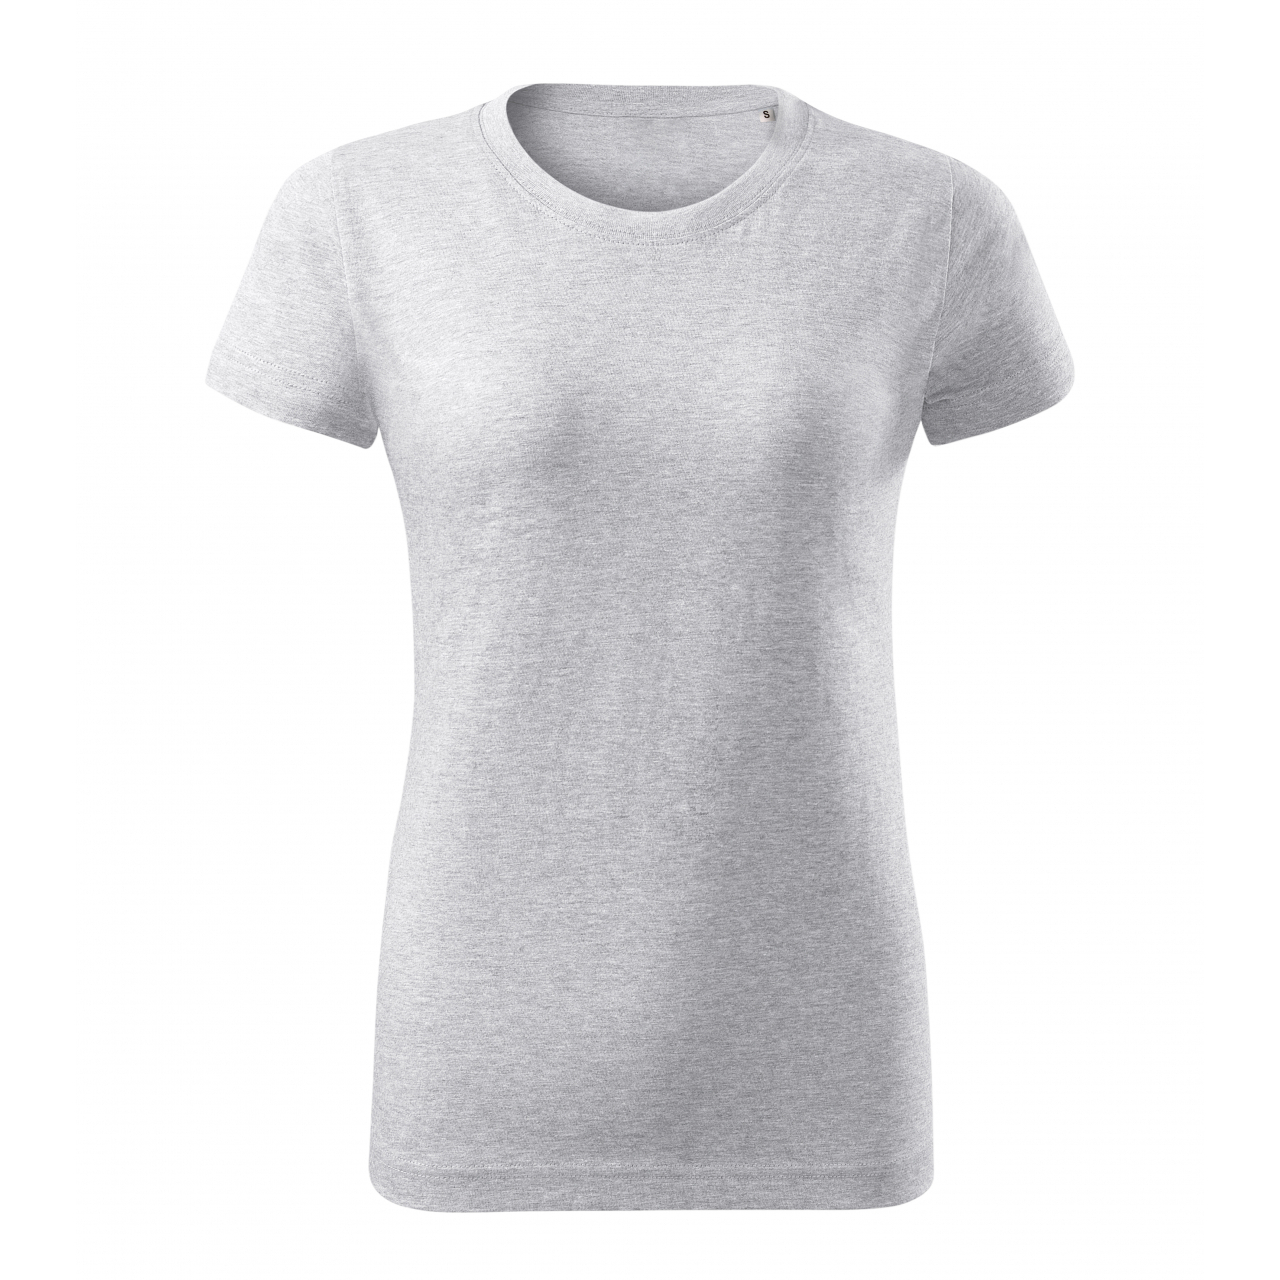 Tričko dámské Malfini Basic Free - světle šedé, M